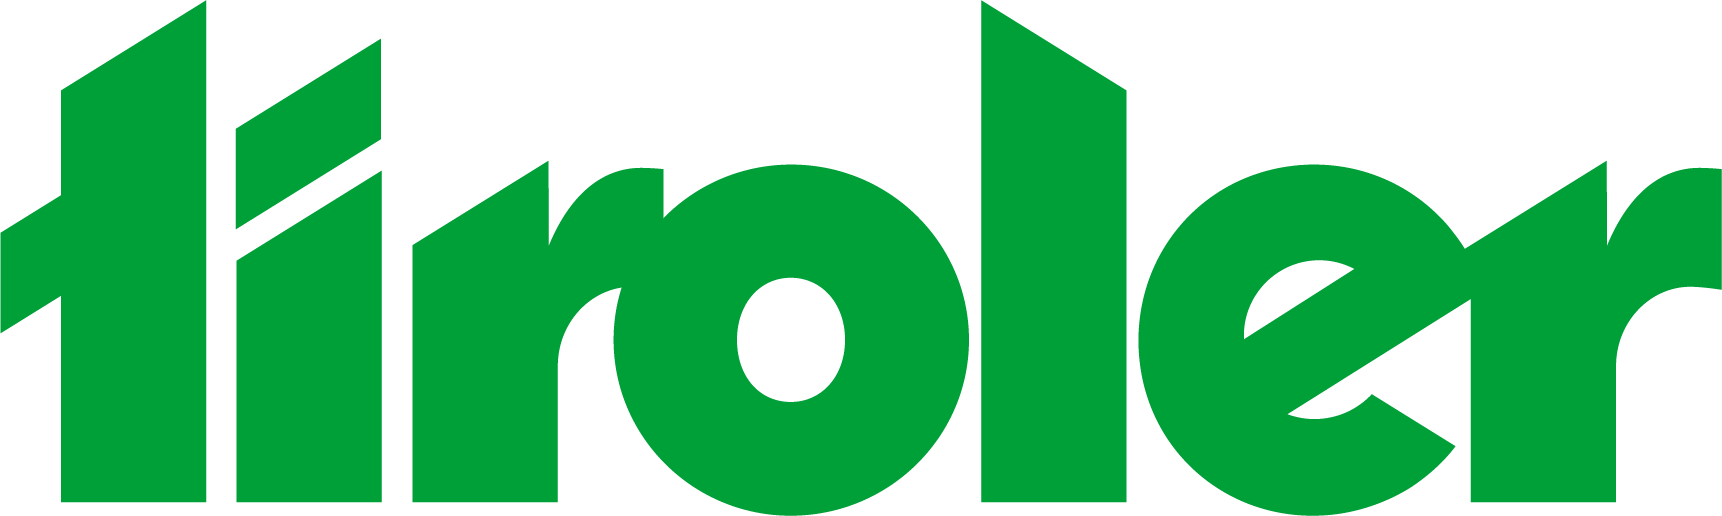 Tiroler_Logo_RGB